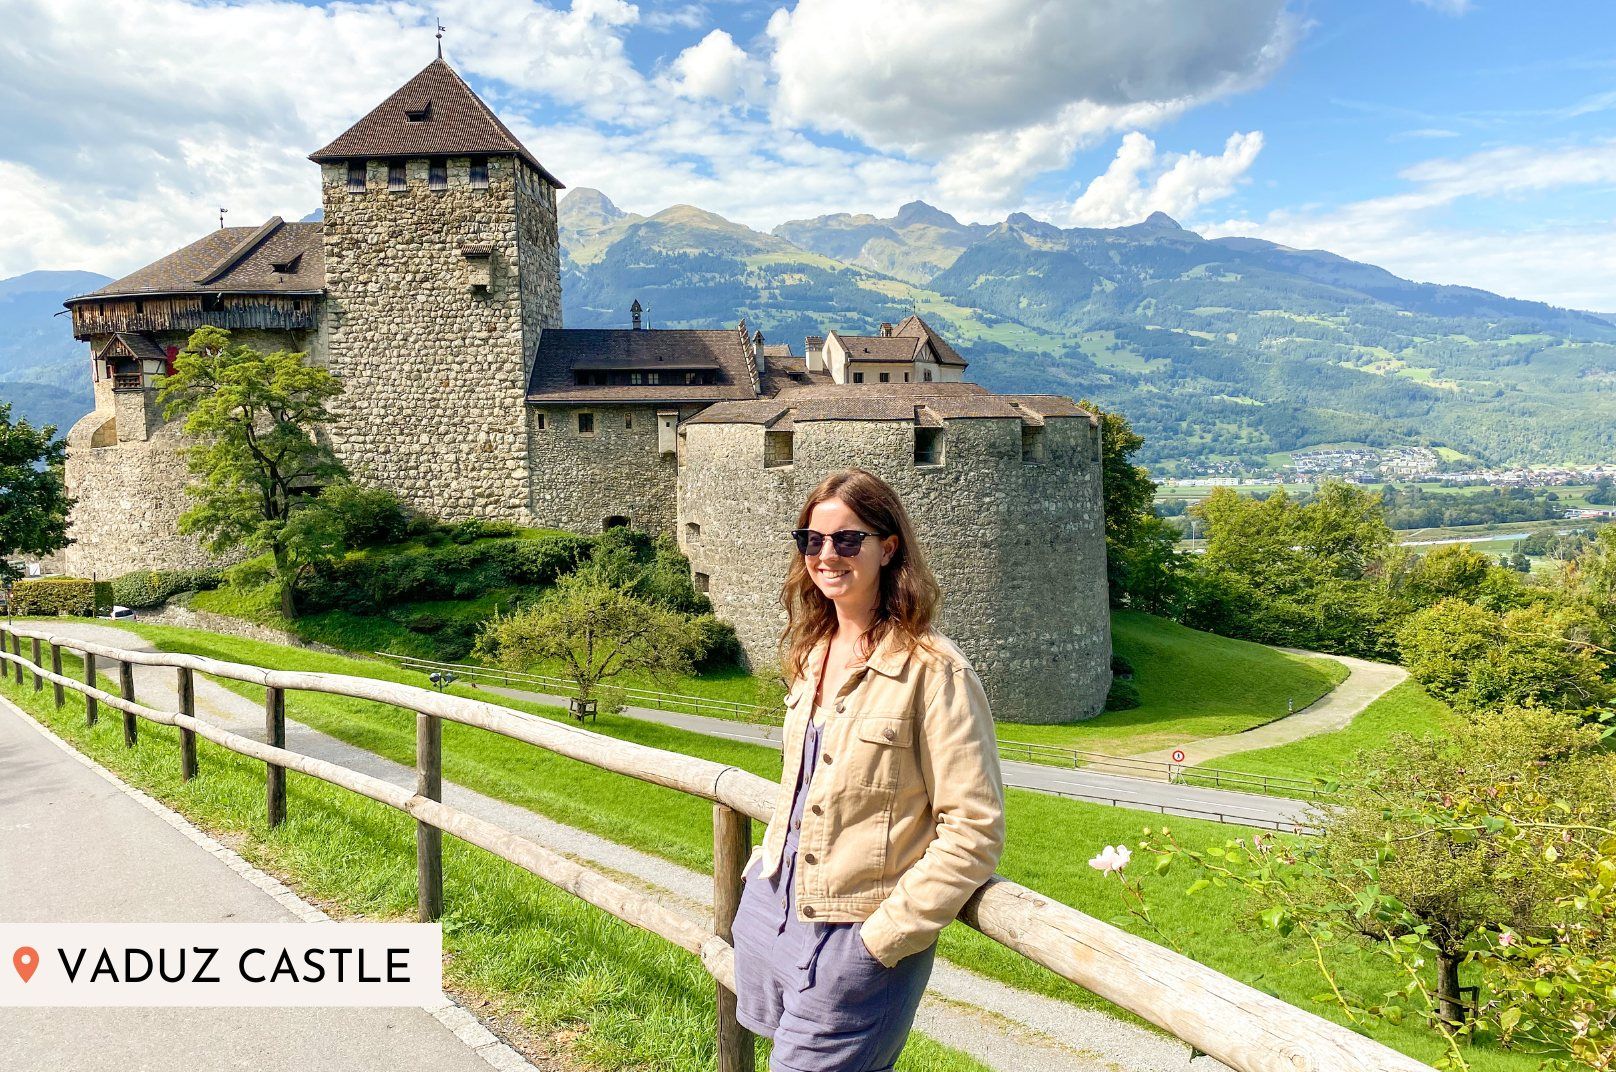 Liechtenstein pictures for trip inspiration